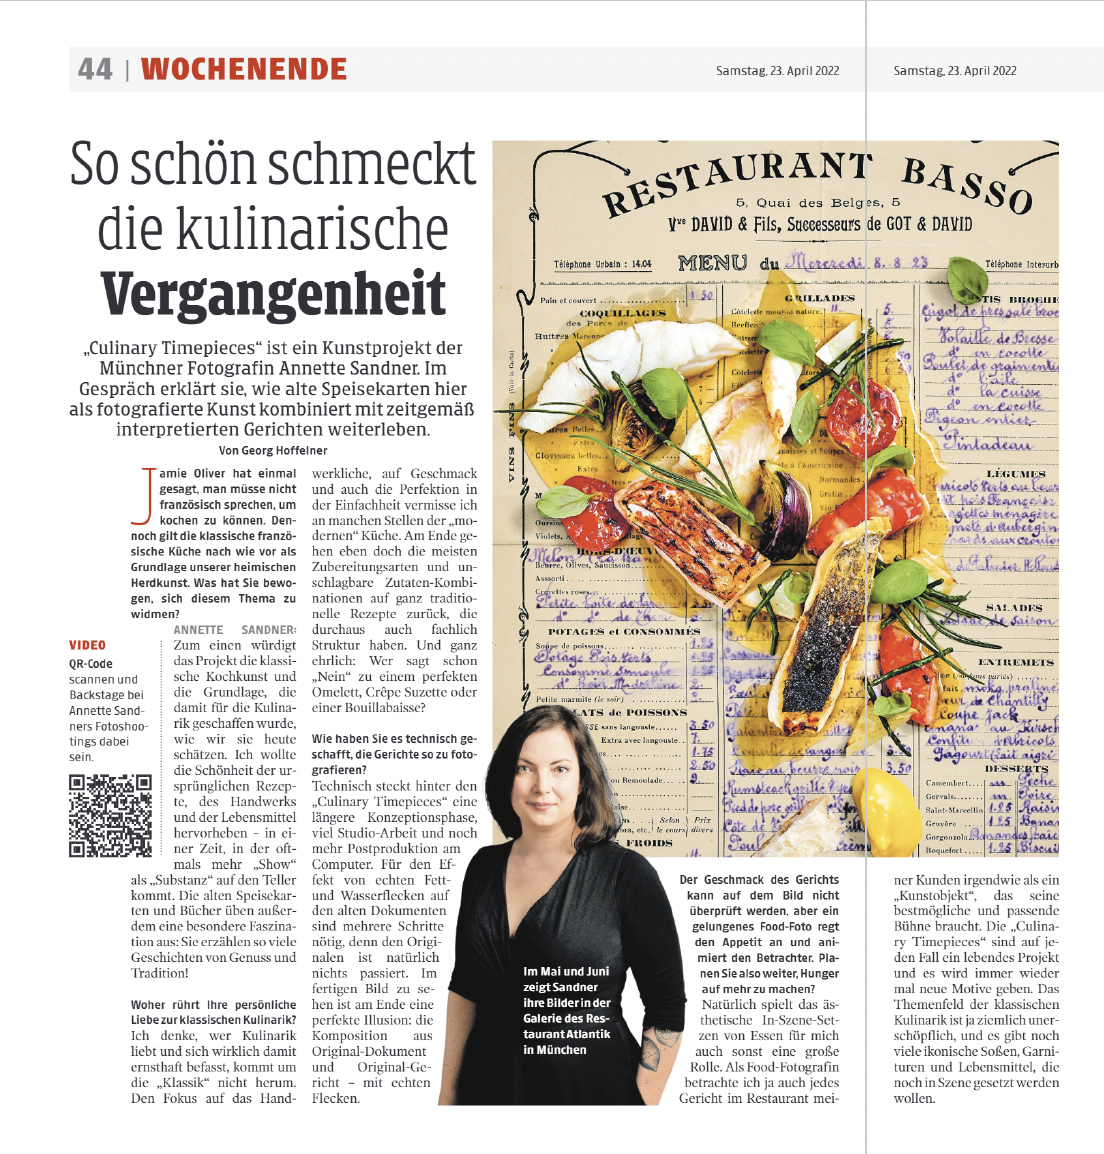 Kleine Zeitung 23.04.22 - So schön schmeckt die kulinarische Vergangenheit